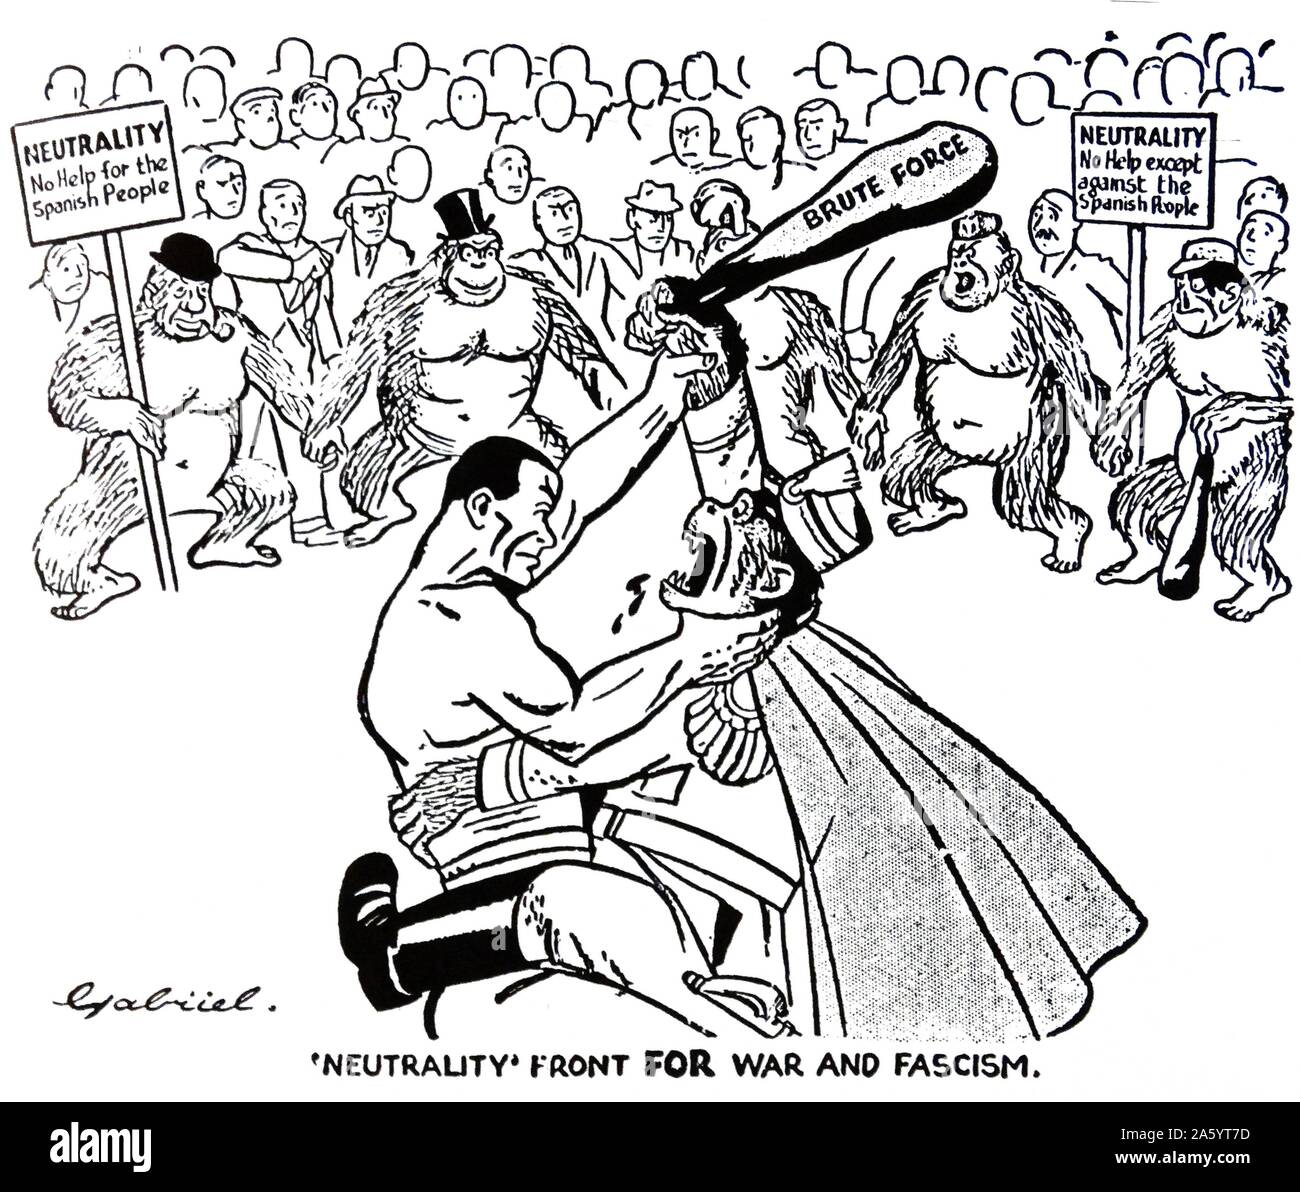 British cartoon dal lavoratore quotidiana mostra che la neutralità è stato spinto verso le forze fasciste, durante la Guerra Civile Spagnola Foto Stock